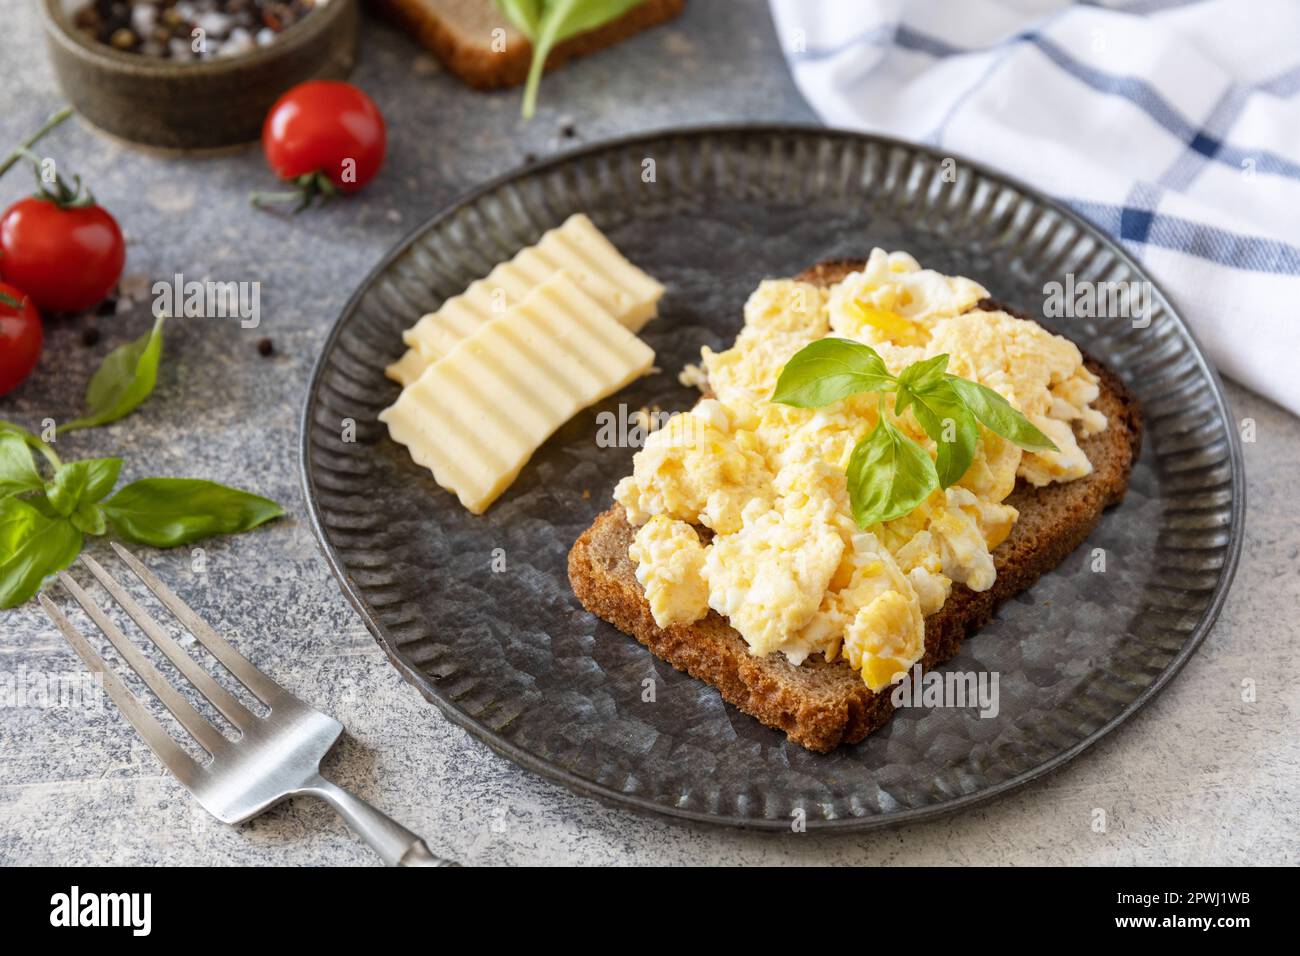 Œufs brouillés sur du pain à grains entiers sur une table en pierre. Petit-déjeuner ou brunch maison - œufs brouillés. Banque D'Images